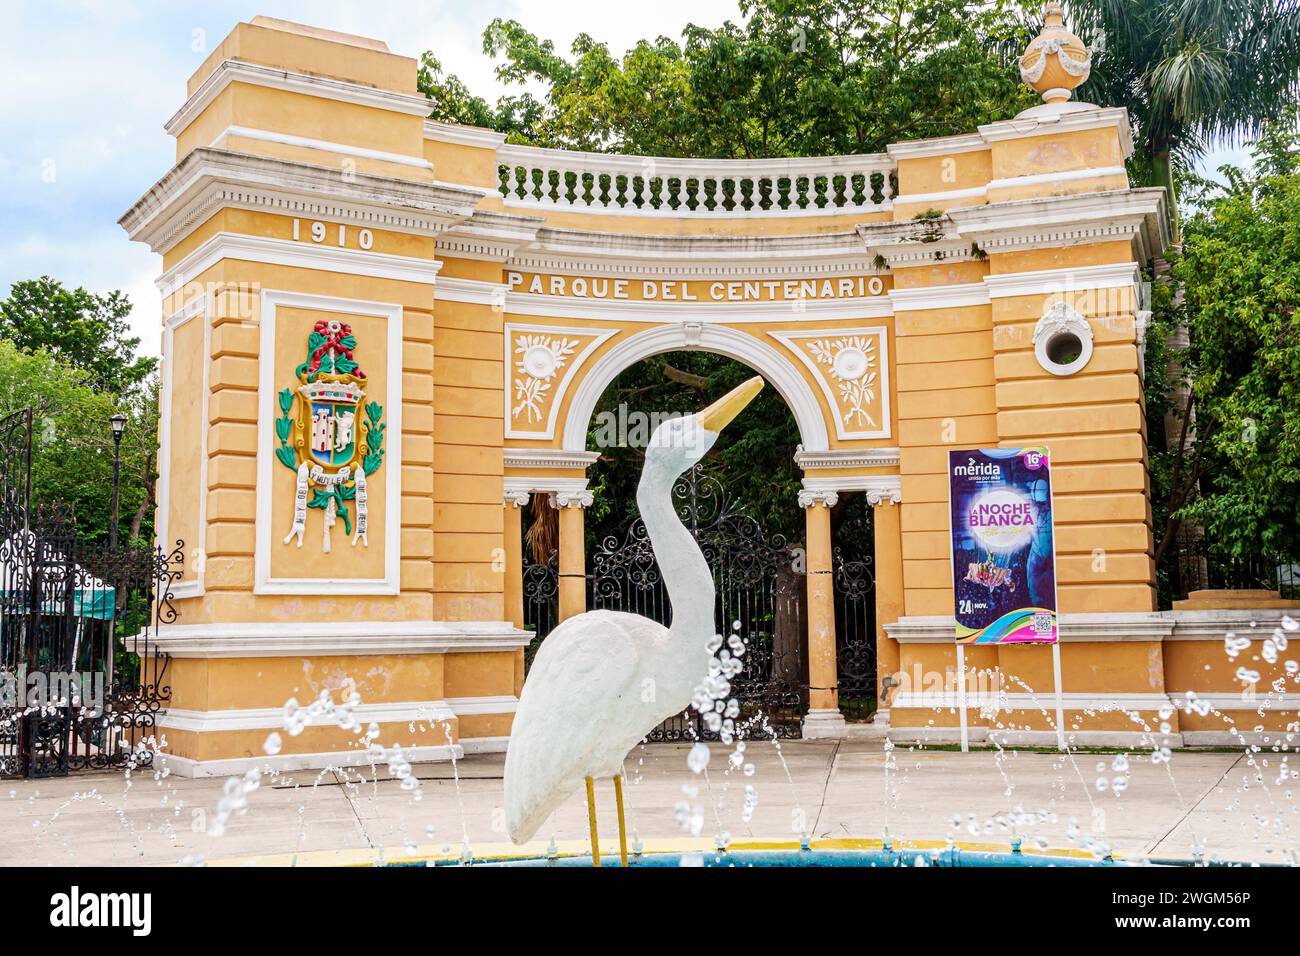 Merida Mexico, Parque Zoologico del Centenario, parco pubblico centenario, arco d'ingresso, fontana pubblica, statua di uccello egret bianco, stemma della città, me Foto Stock